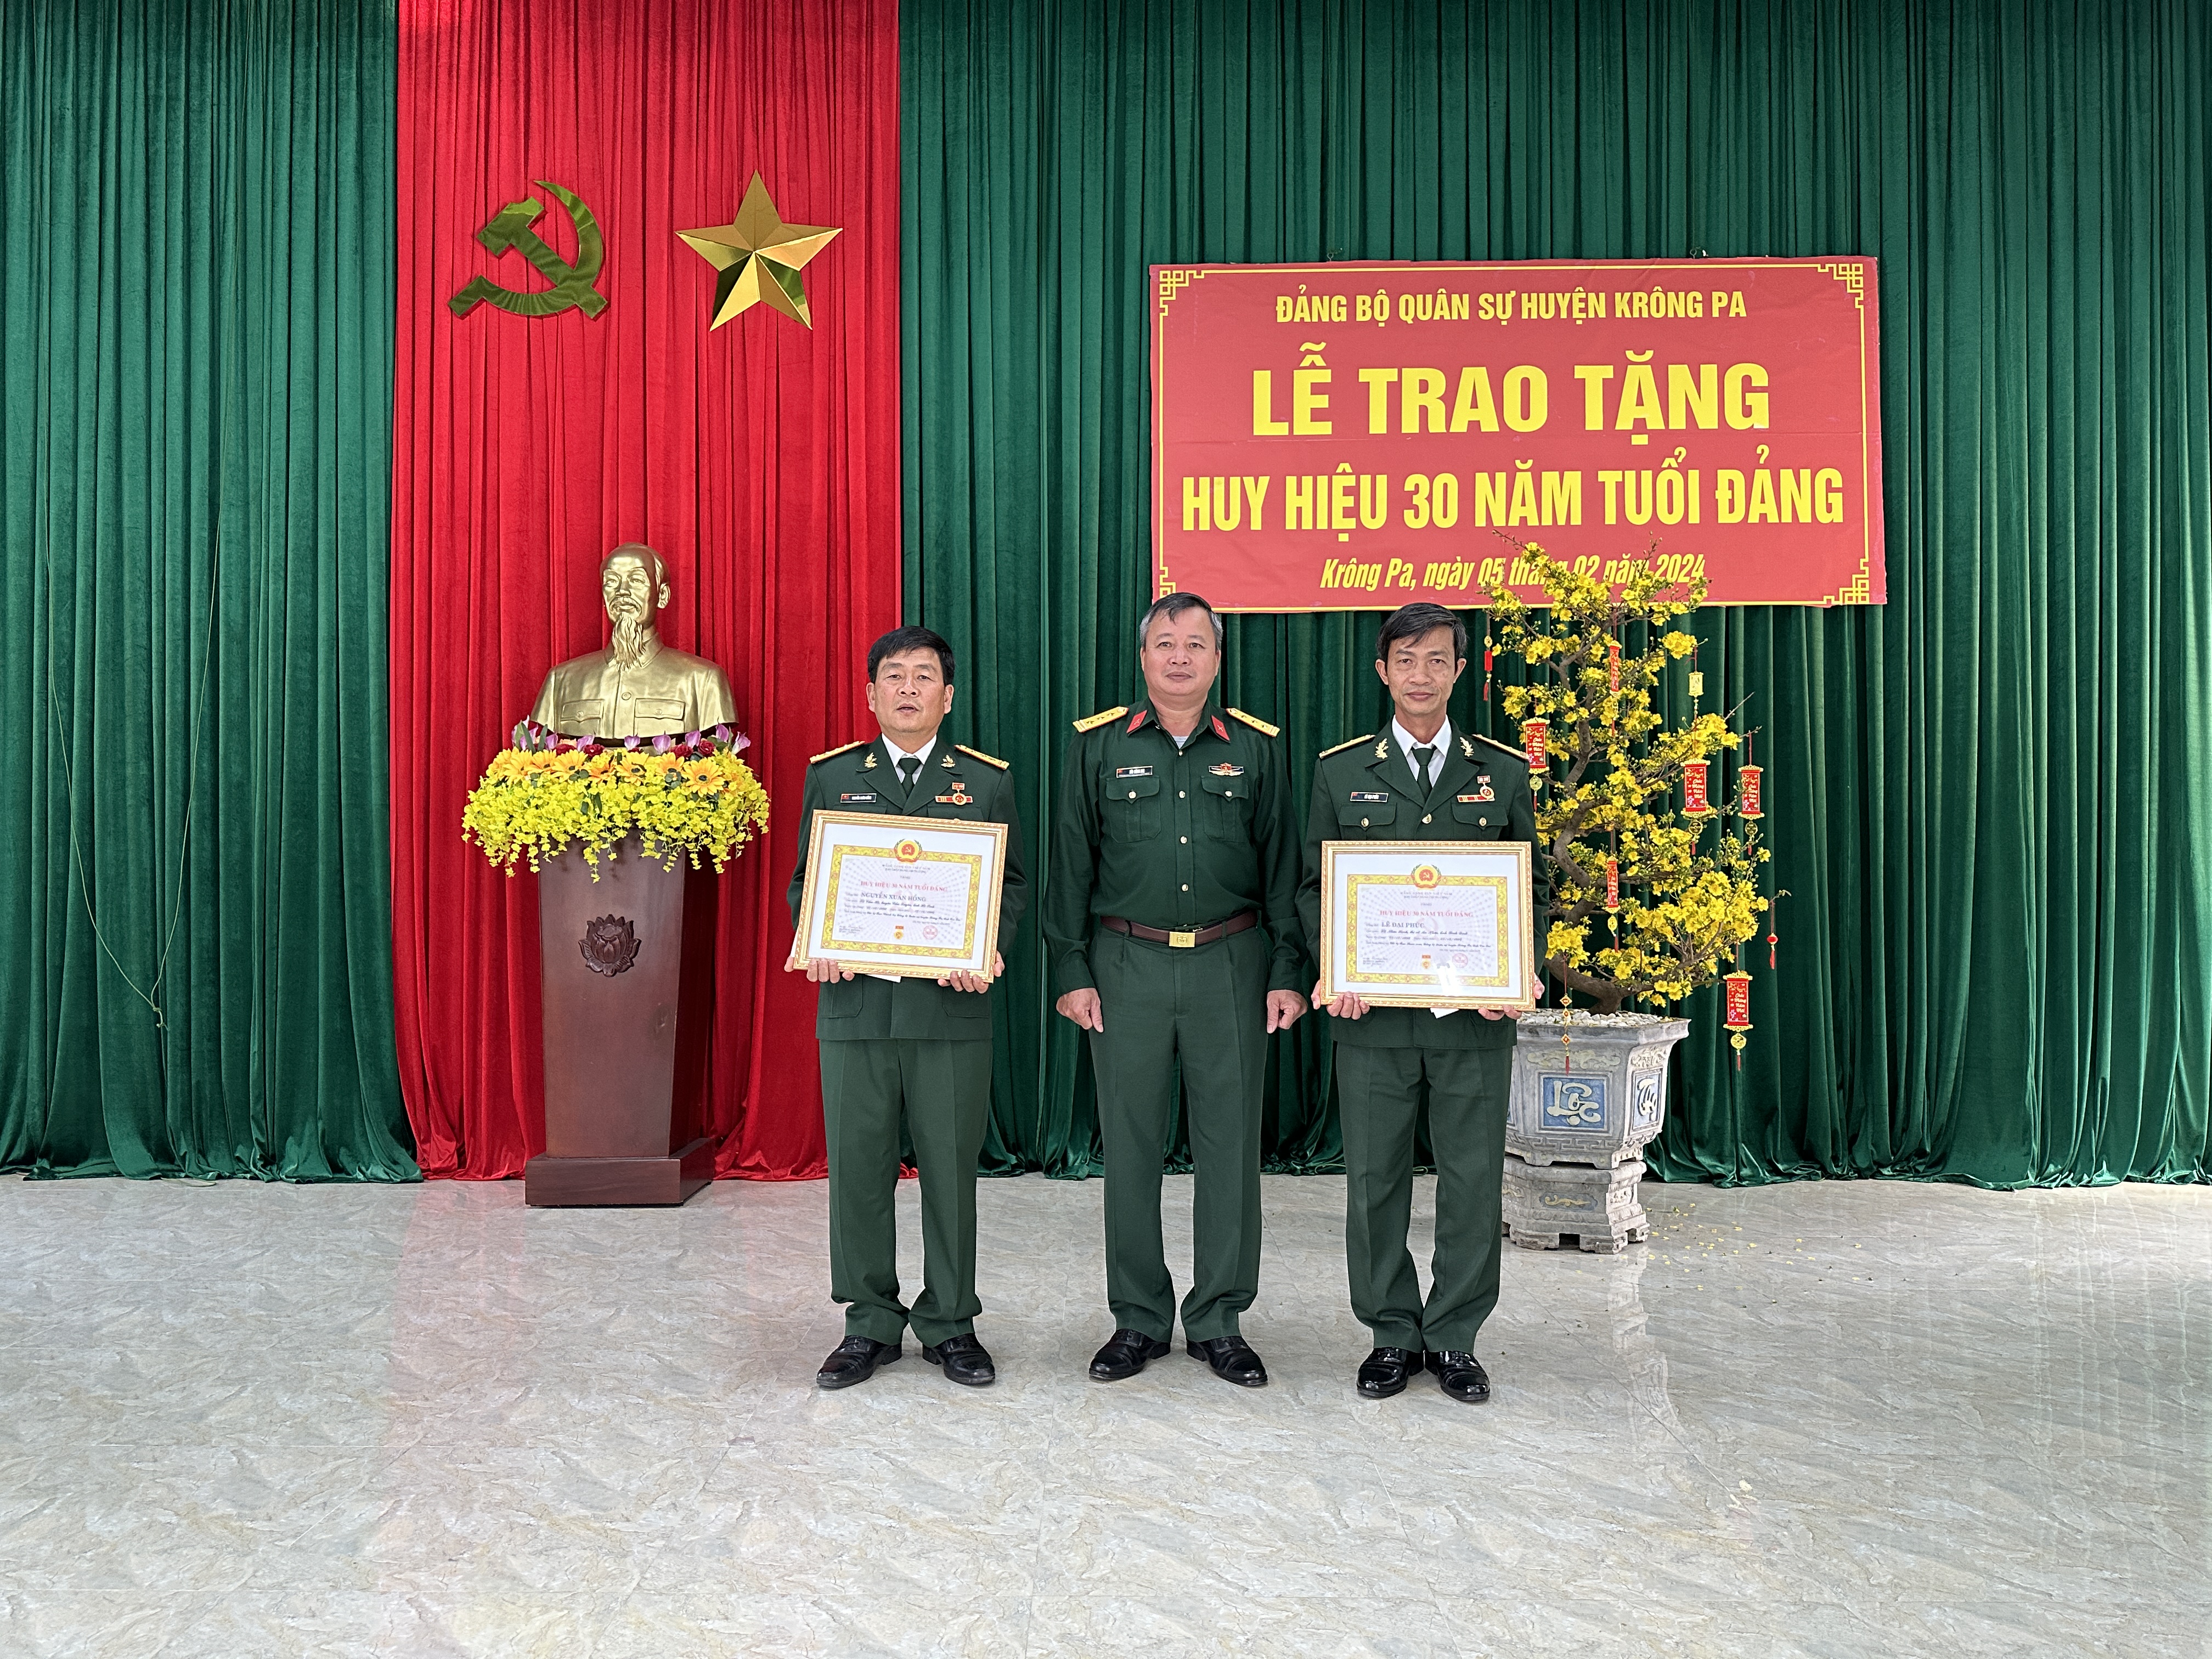 Đảng bộ Quân sự huyện Krông Pa tổ chức Lễ trao tặng Huy hiệu 30 năm tuổi Đảng